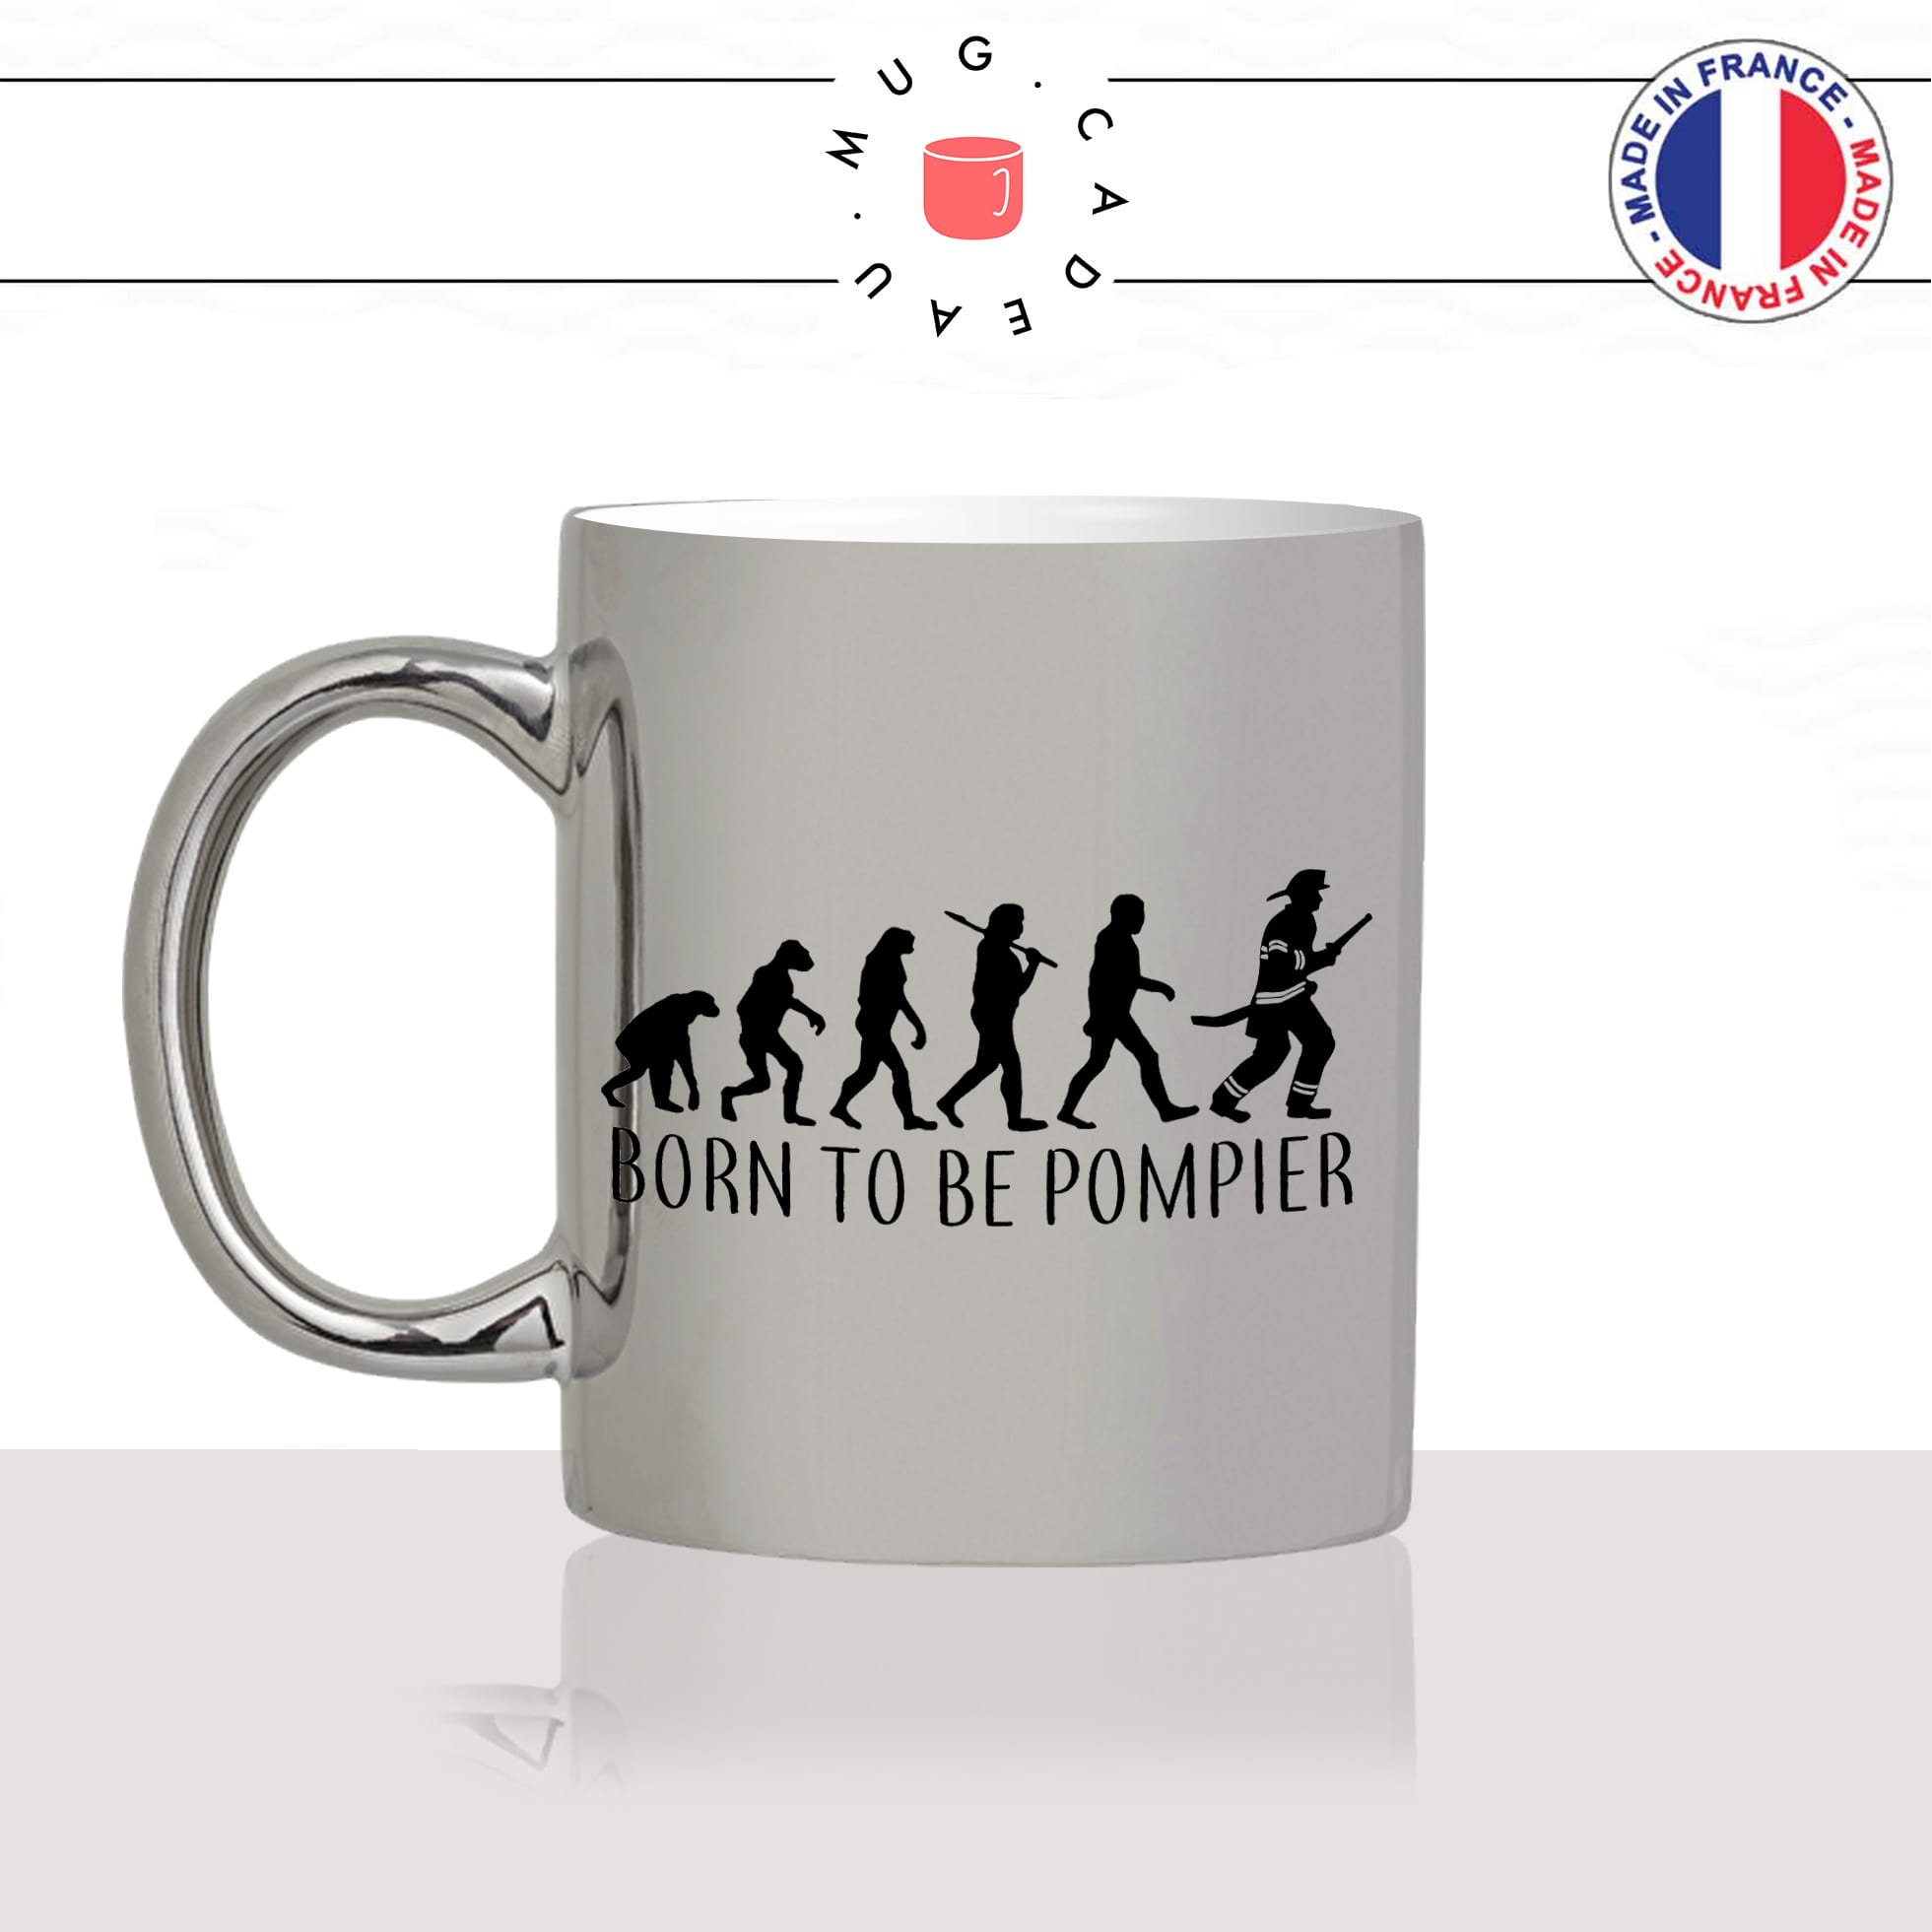 mug-tasse-argent-argenté-silver-born-to-be-pompier-evolution-humaine-singe-primate-metier-volontaire-humour-idée-cadeau-fun-cool-café-thé-min